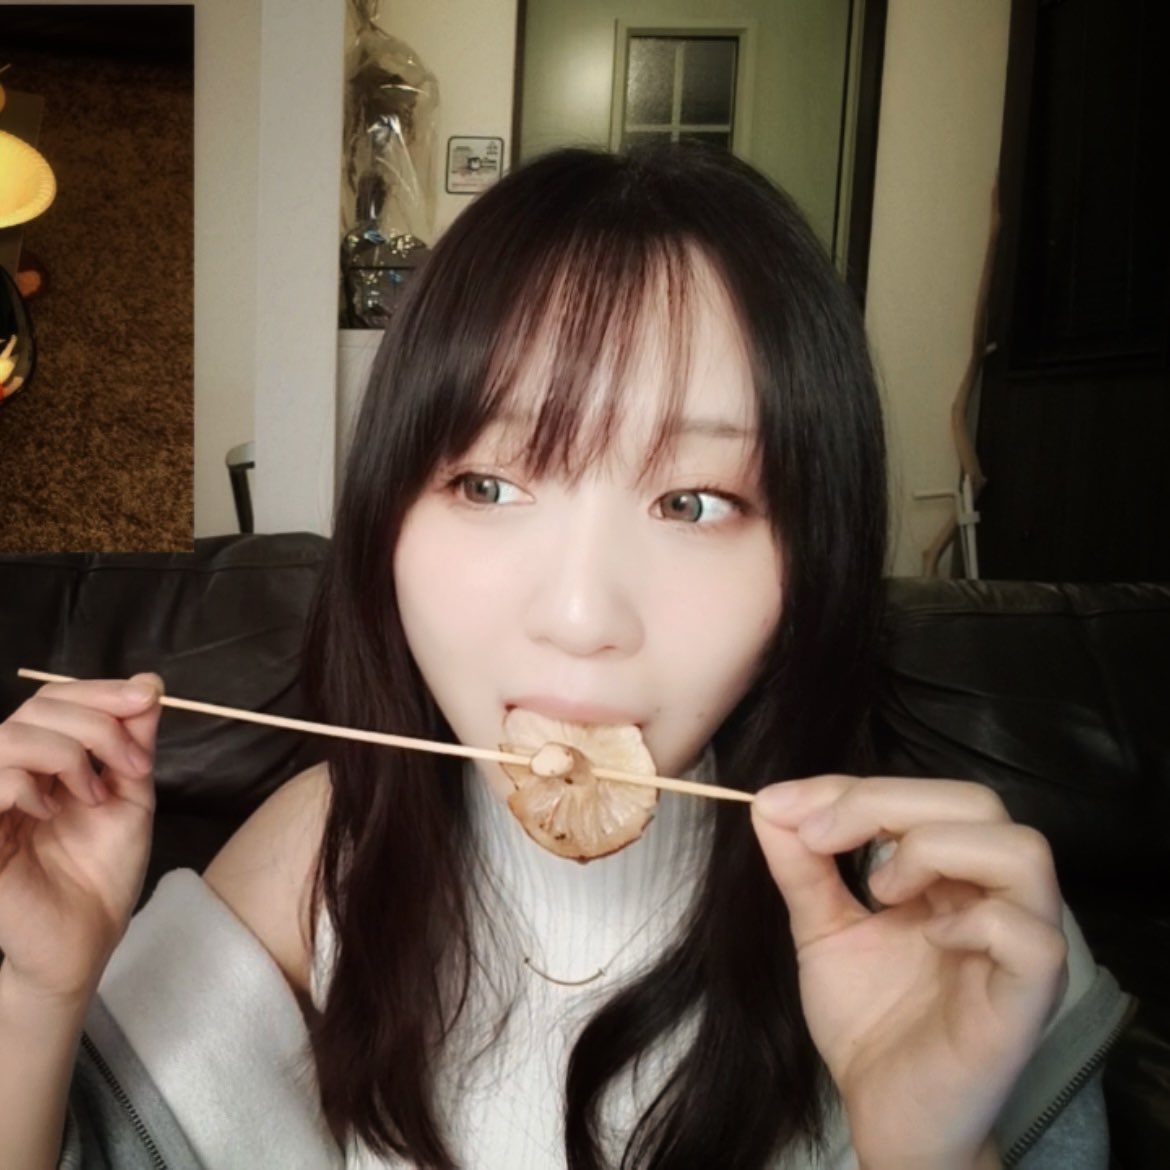 先に謝っておきます。ごめんなさい🙏
綺麗なお姉さんが、
ソーセージ🌭と
きのこ🍄‍🟫を食べているところです。
#伊織もえ #iorimoe #伊織萌
#japanesegirl #cosplayergirl 
twitch.tv/moe_iori